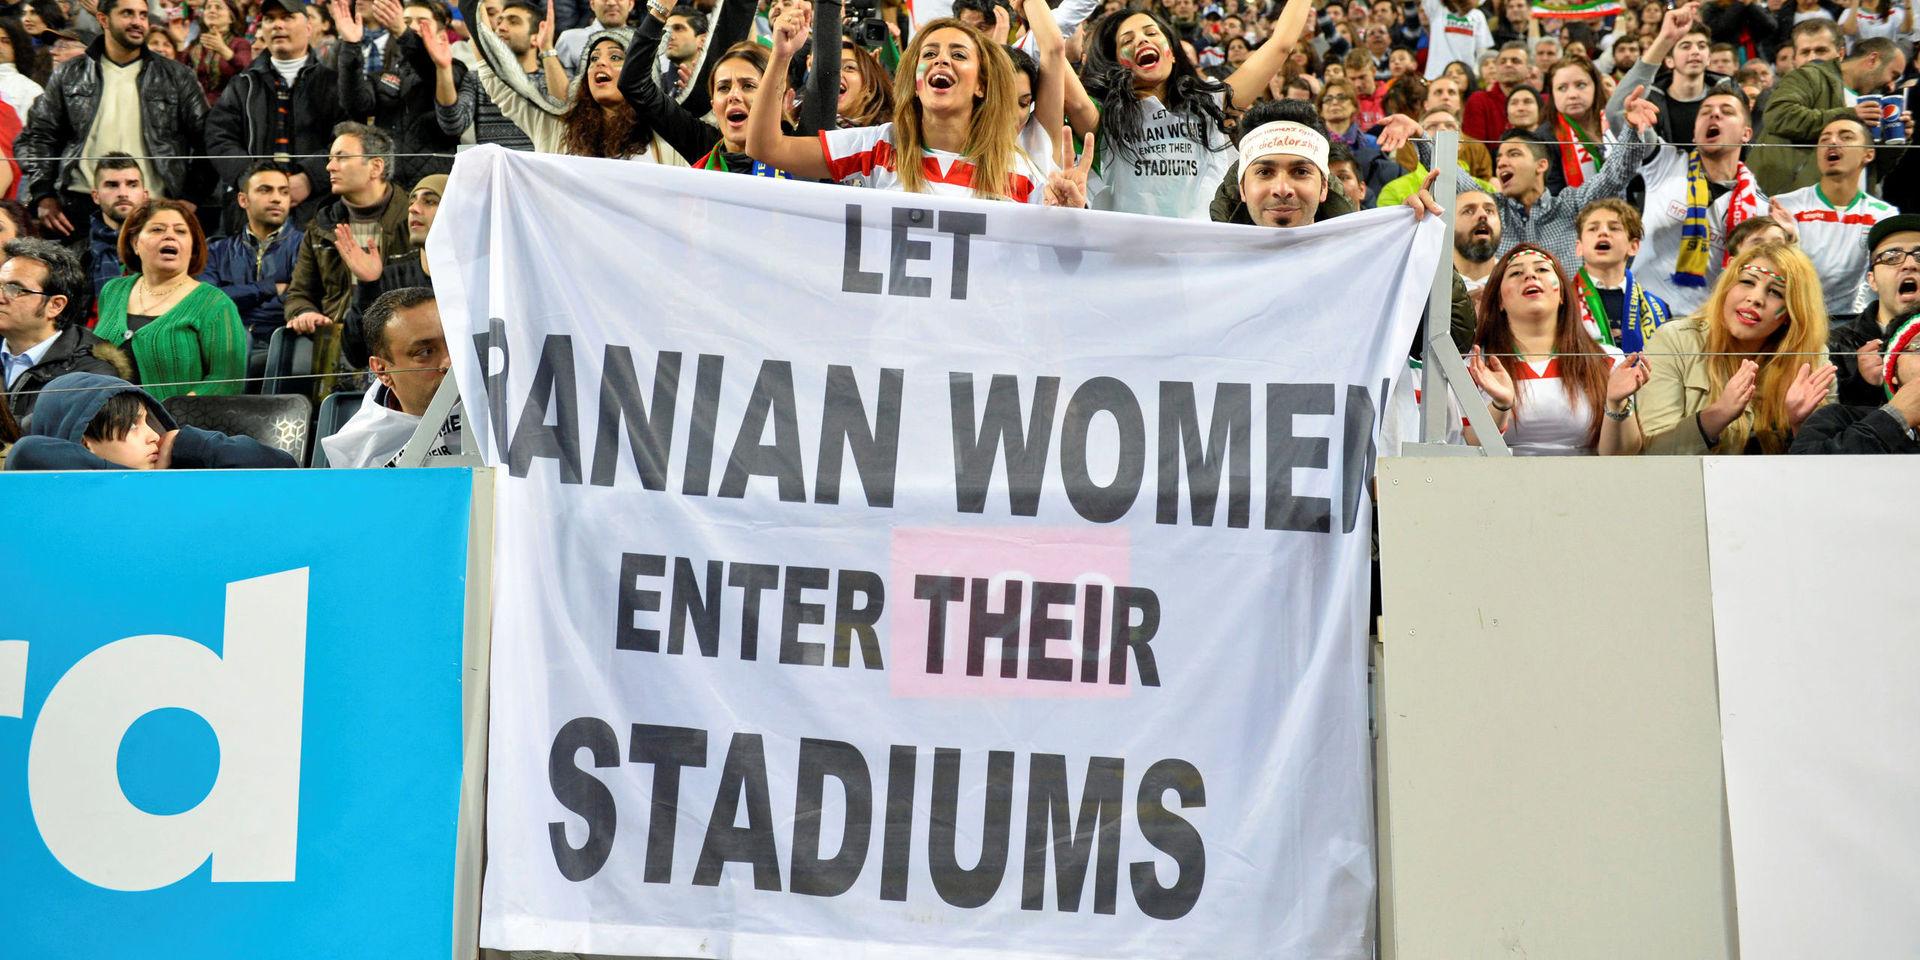 Iranska fotbollsfans protesterar på läktaren i tisdagskvällens fotbollslandskamp mellan Sverige och Iran på Friends Arena i Solna mot att iranska kvinnor riskerar fängelsestraff för att gå på fotbollsmatcher i Iran.
